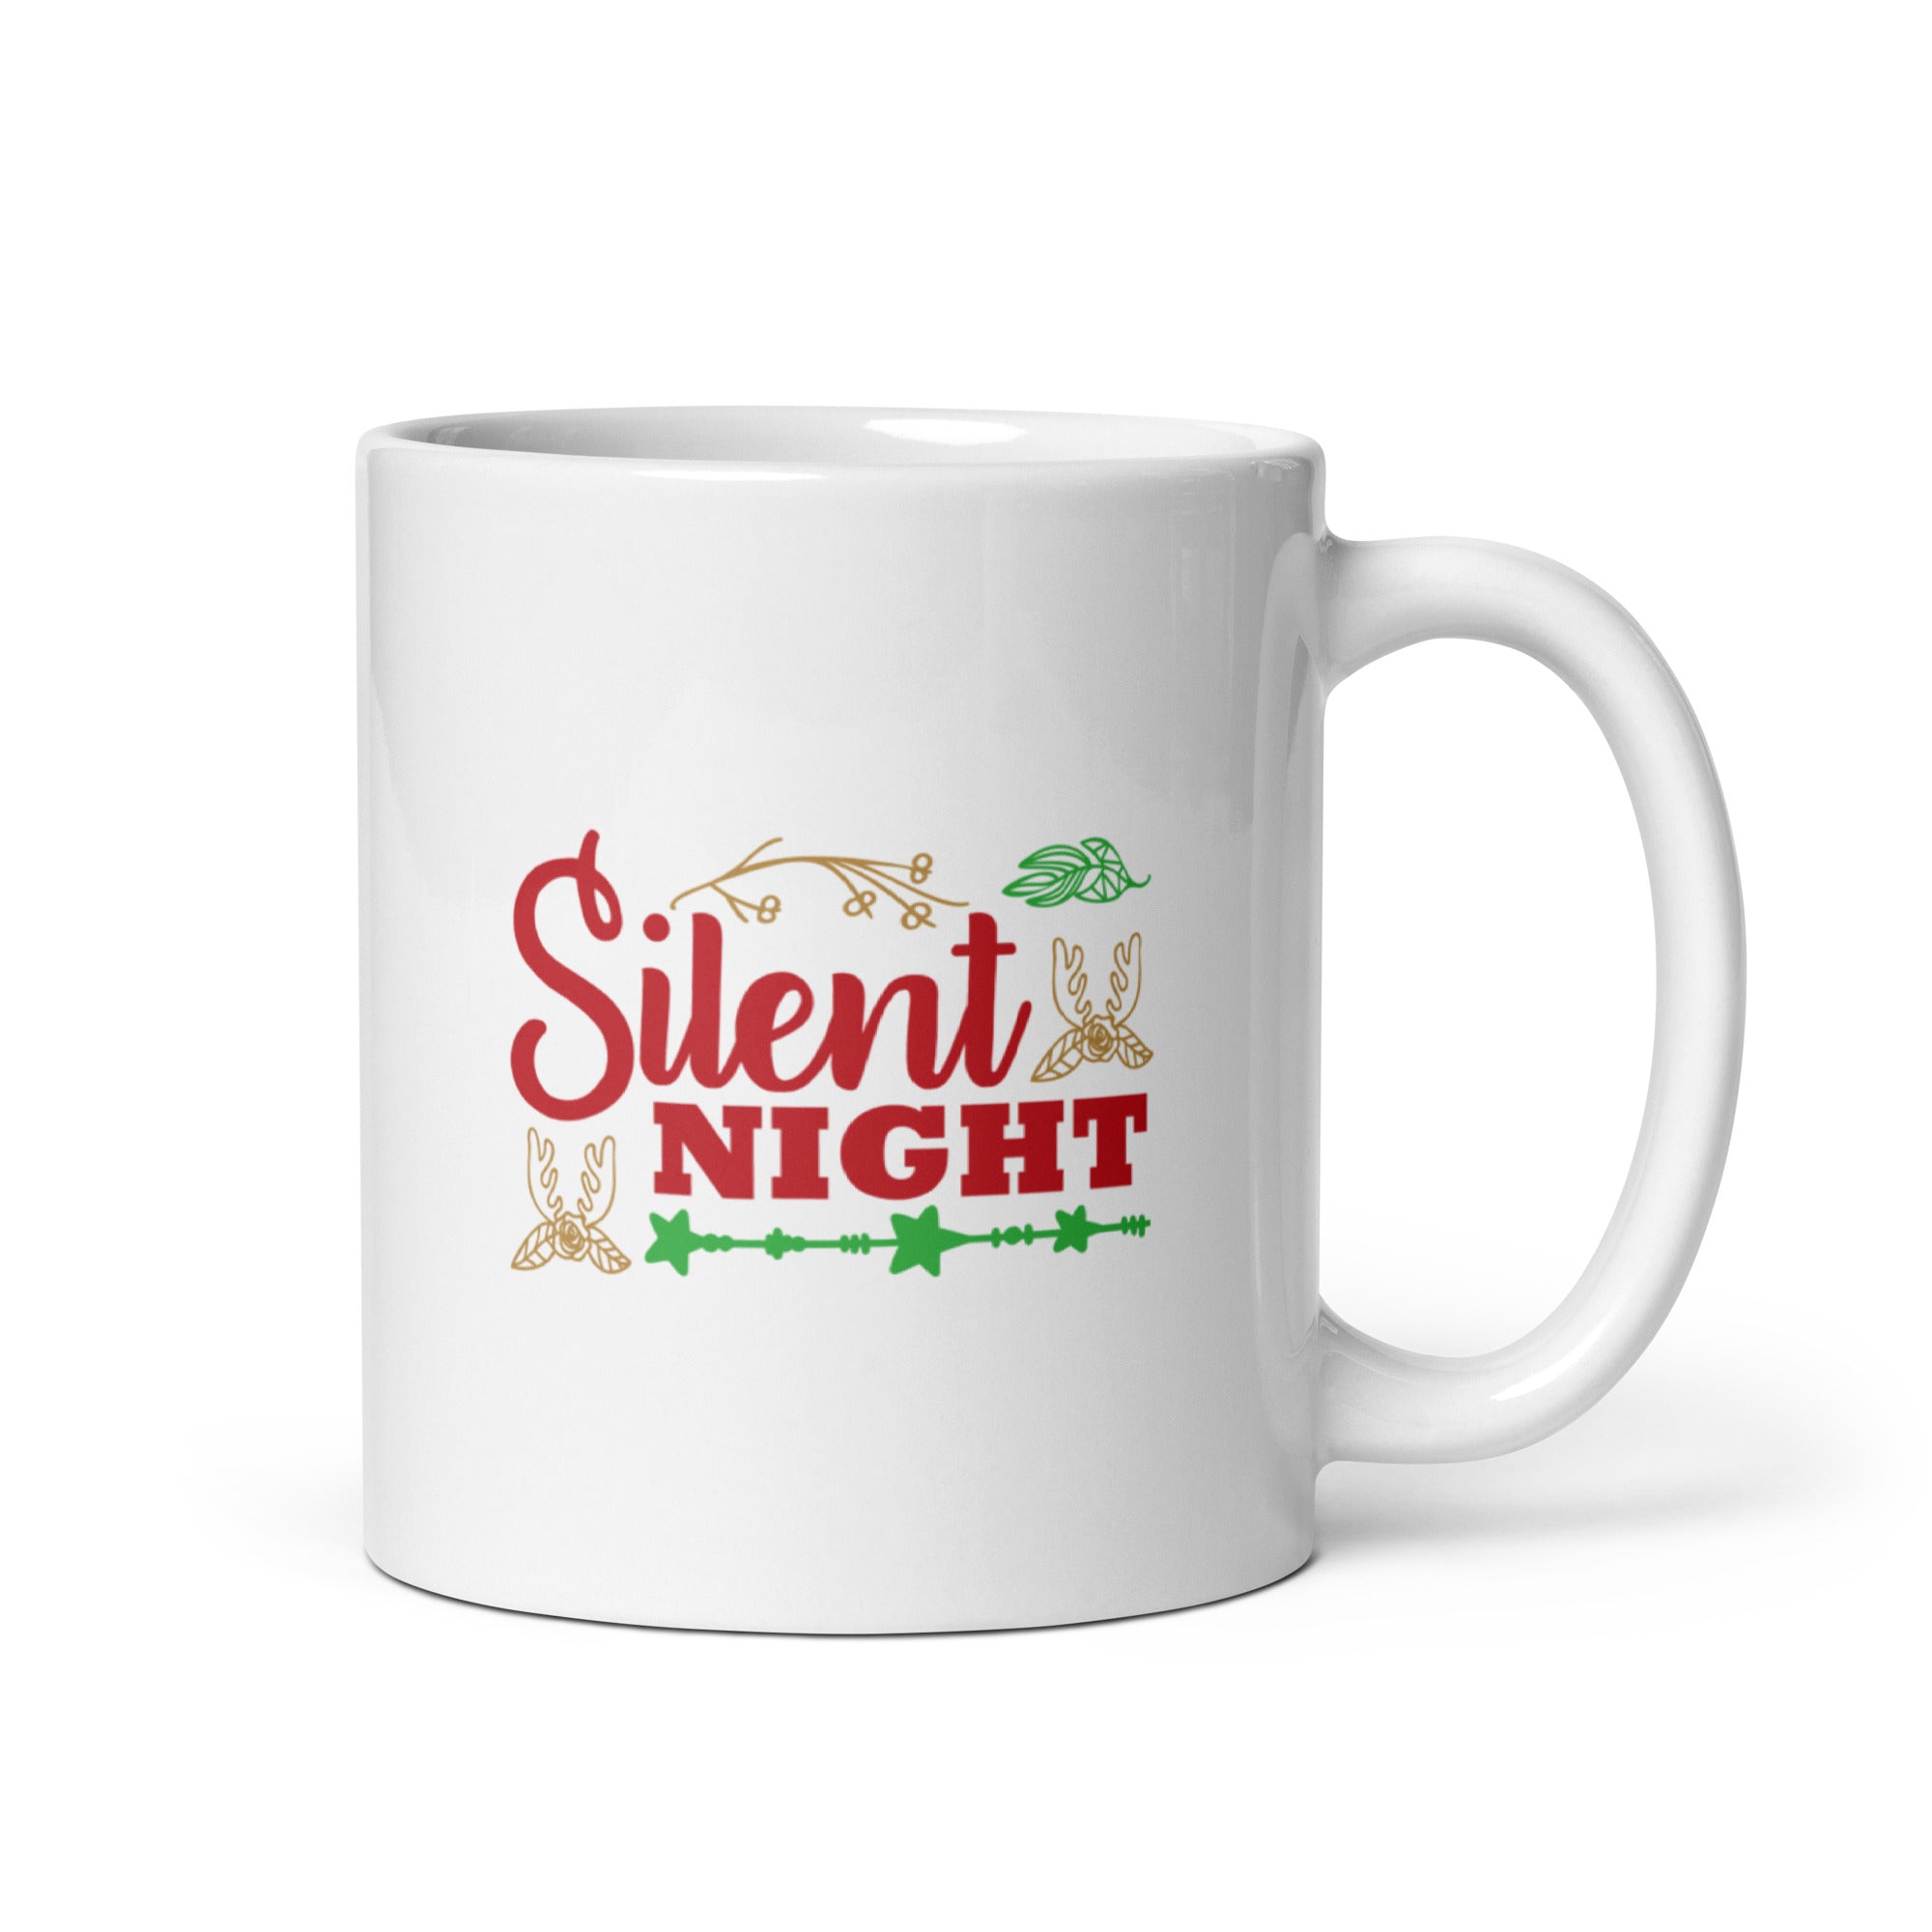 Silent Night - White glossy mug